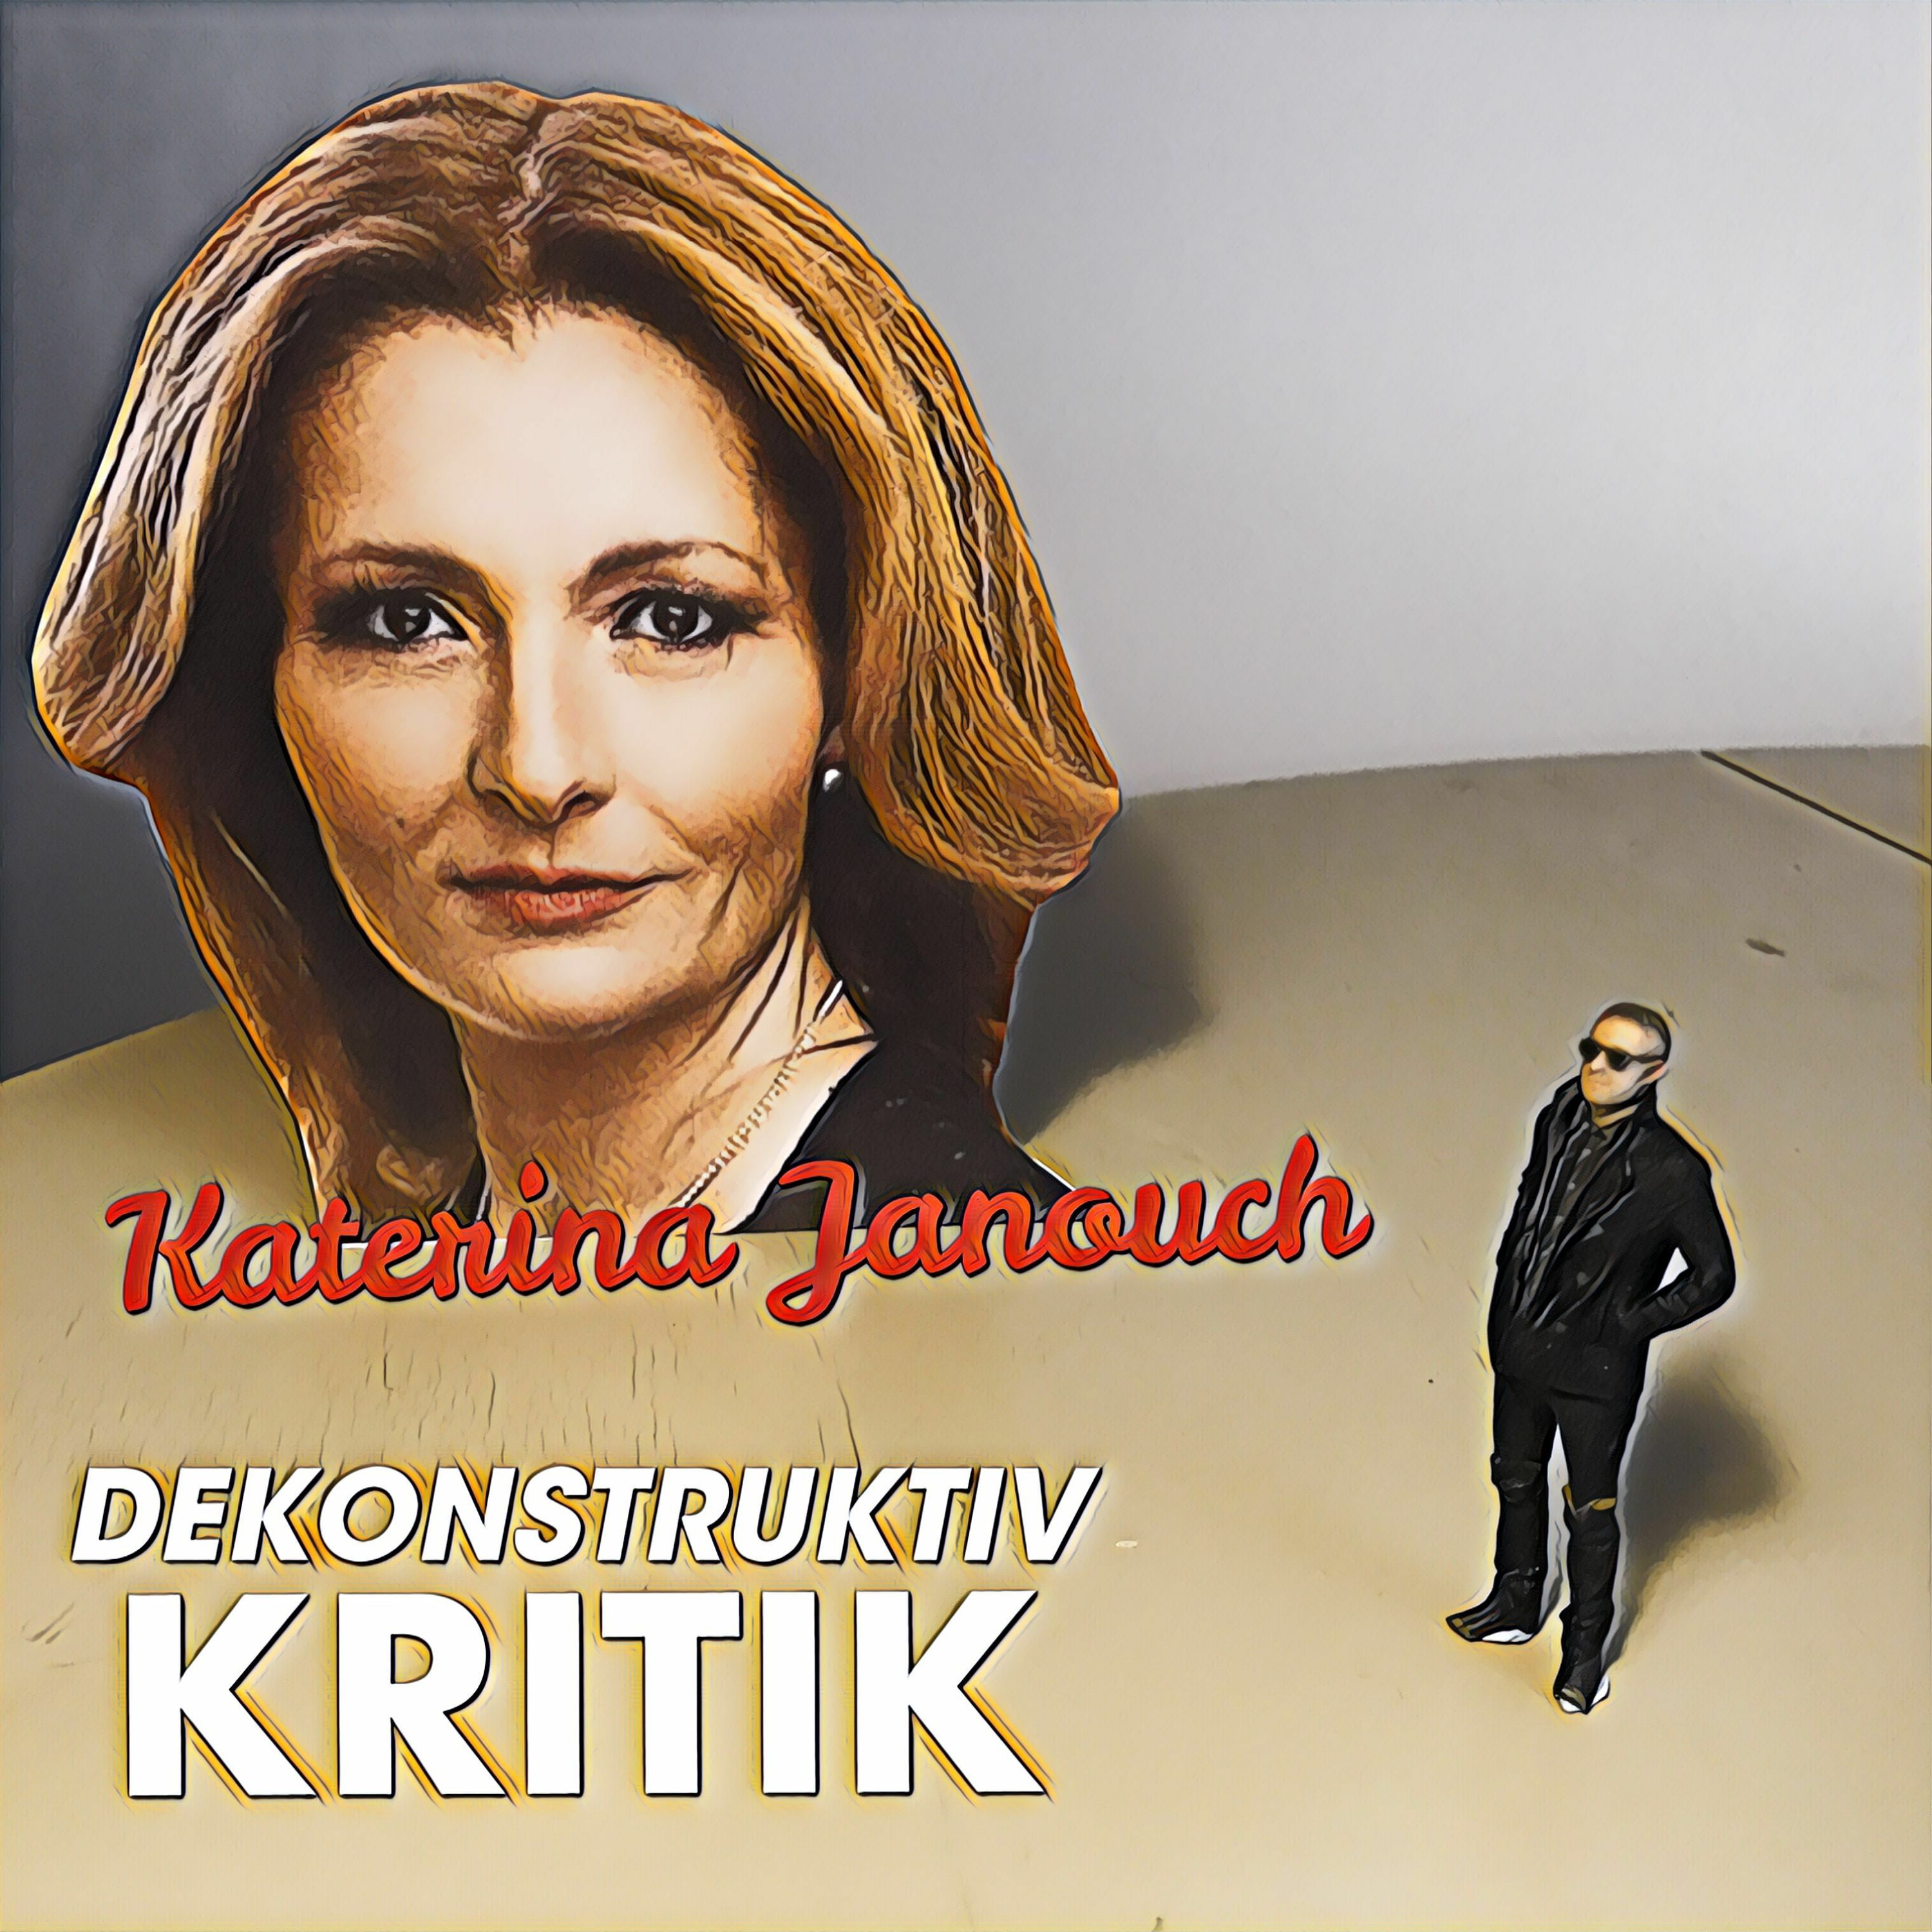 8.3 Katerina Janouch vs SVT